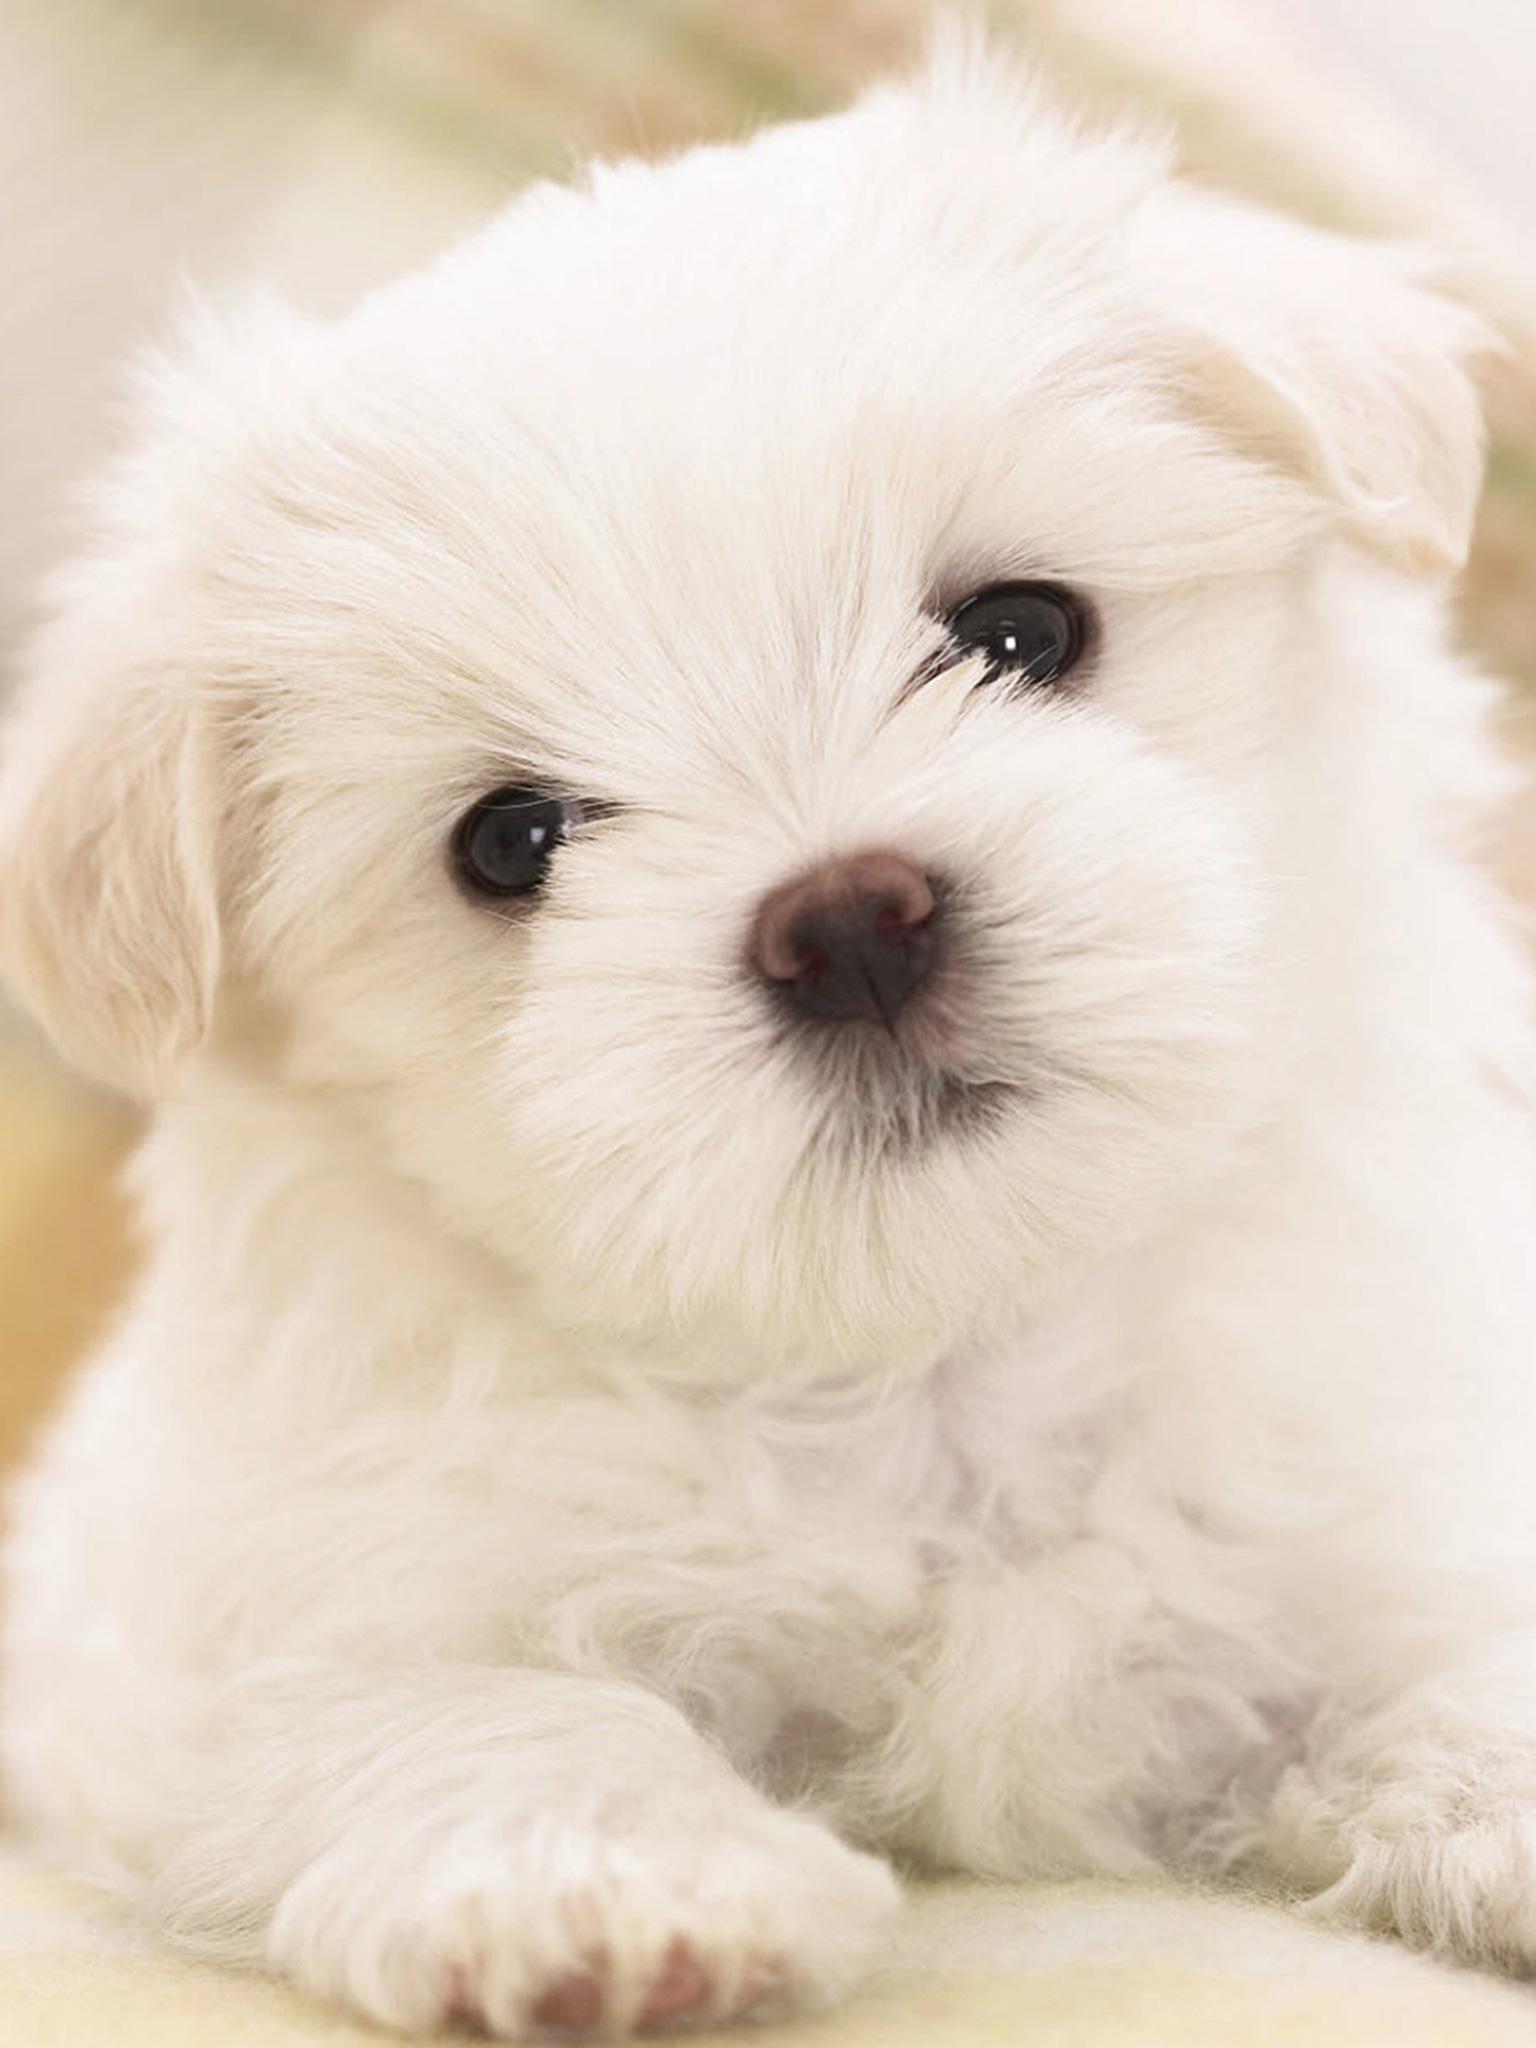 Cute White Dog Wallpapers - Top Những Hình Ảnh Đẹp